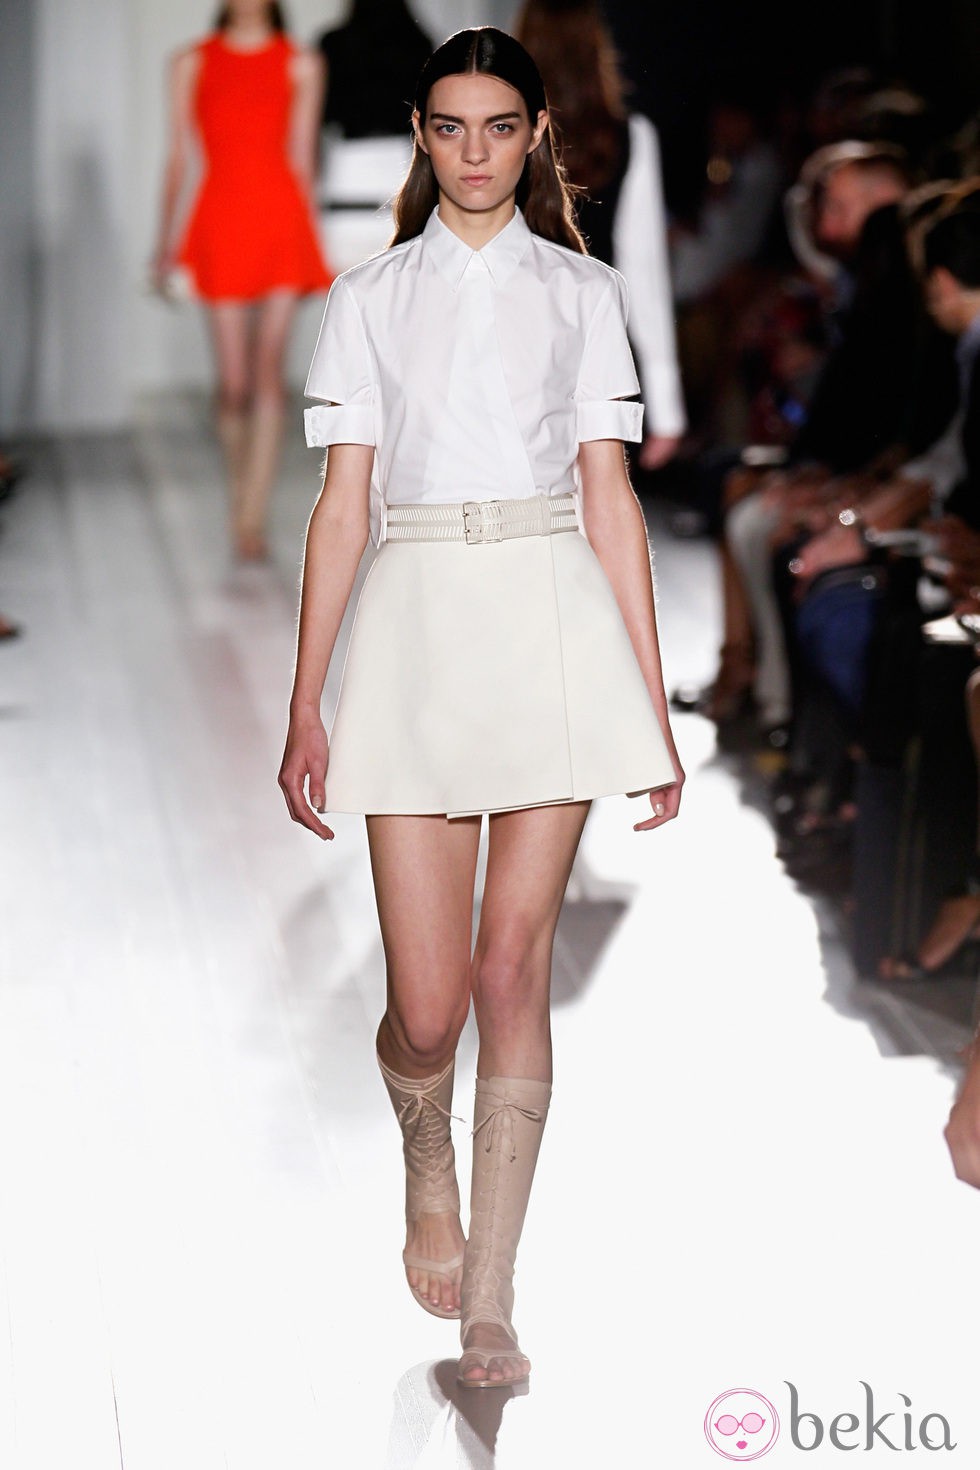 Conjunto blanco de la colección primavera/verano 2013 de Victoria Beckham en la Nueva York Fashion Week